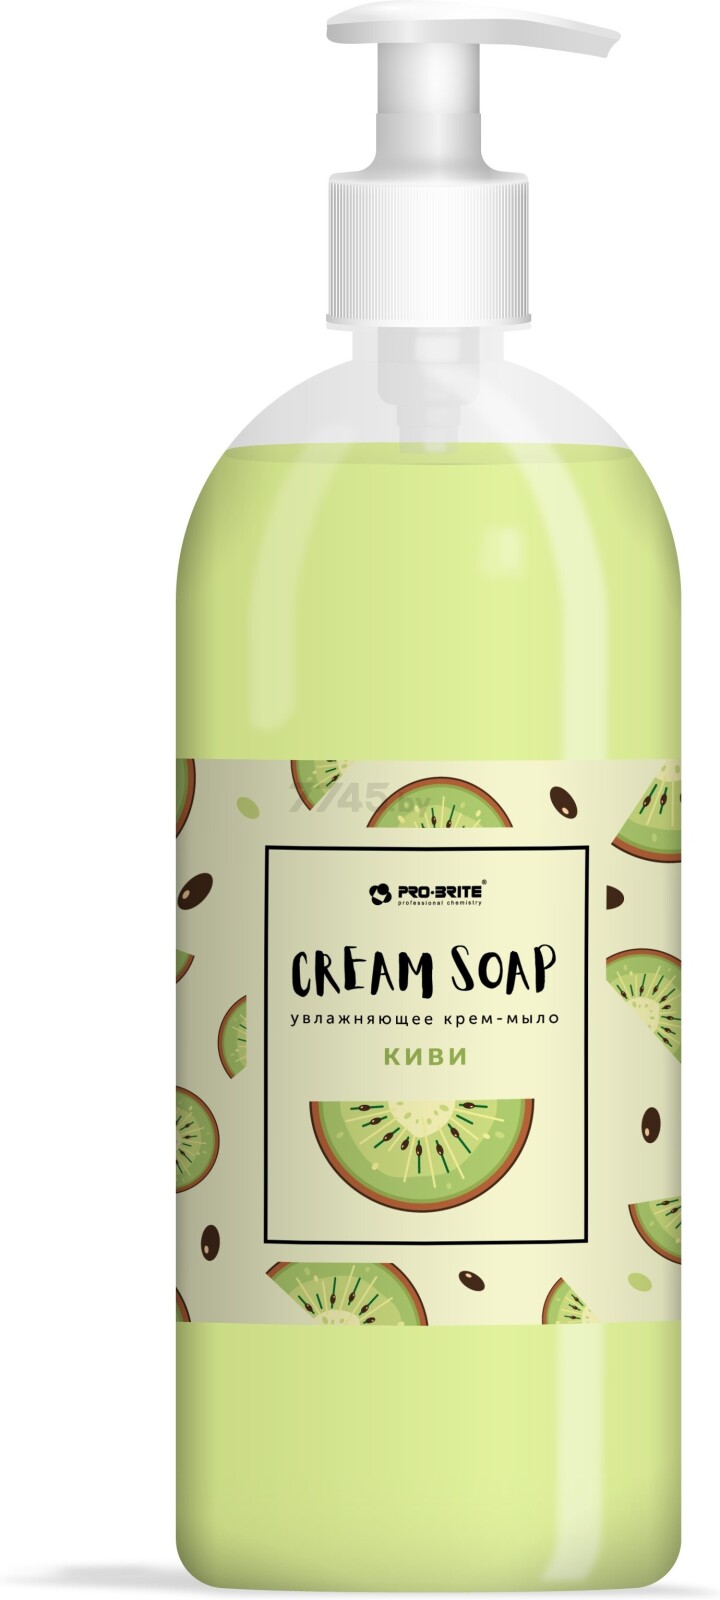 Крем-мыло жидкое PRO-BRITE Cream Soap Standard Киви 1 л (1086-1)